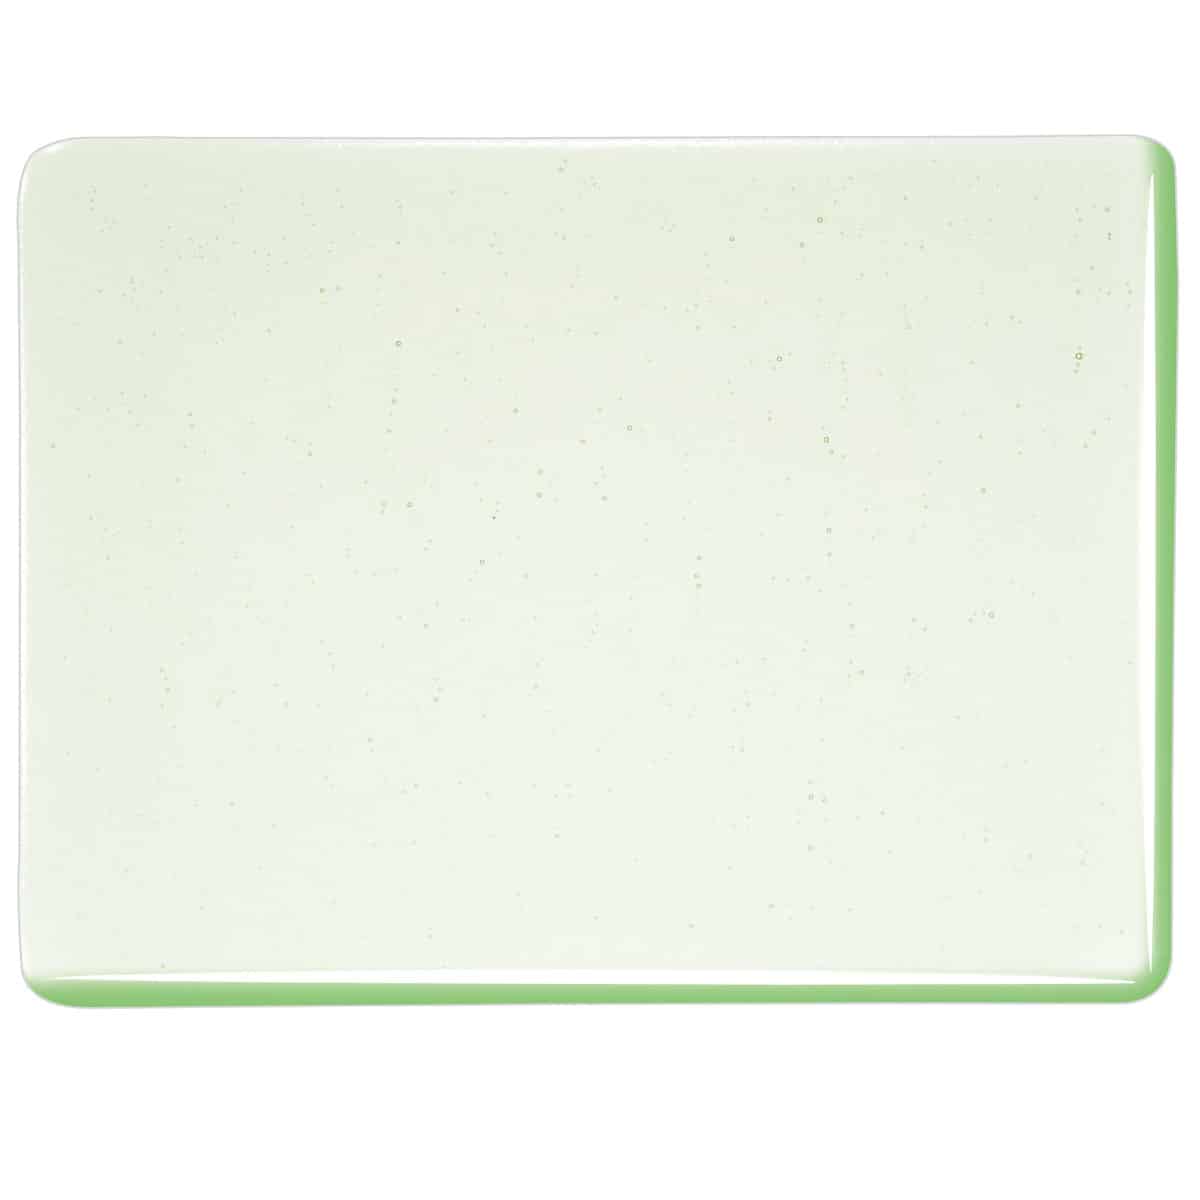 001807 Grass Green Tint sheet glass swatch